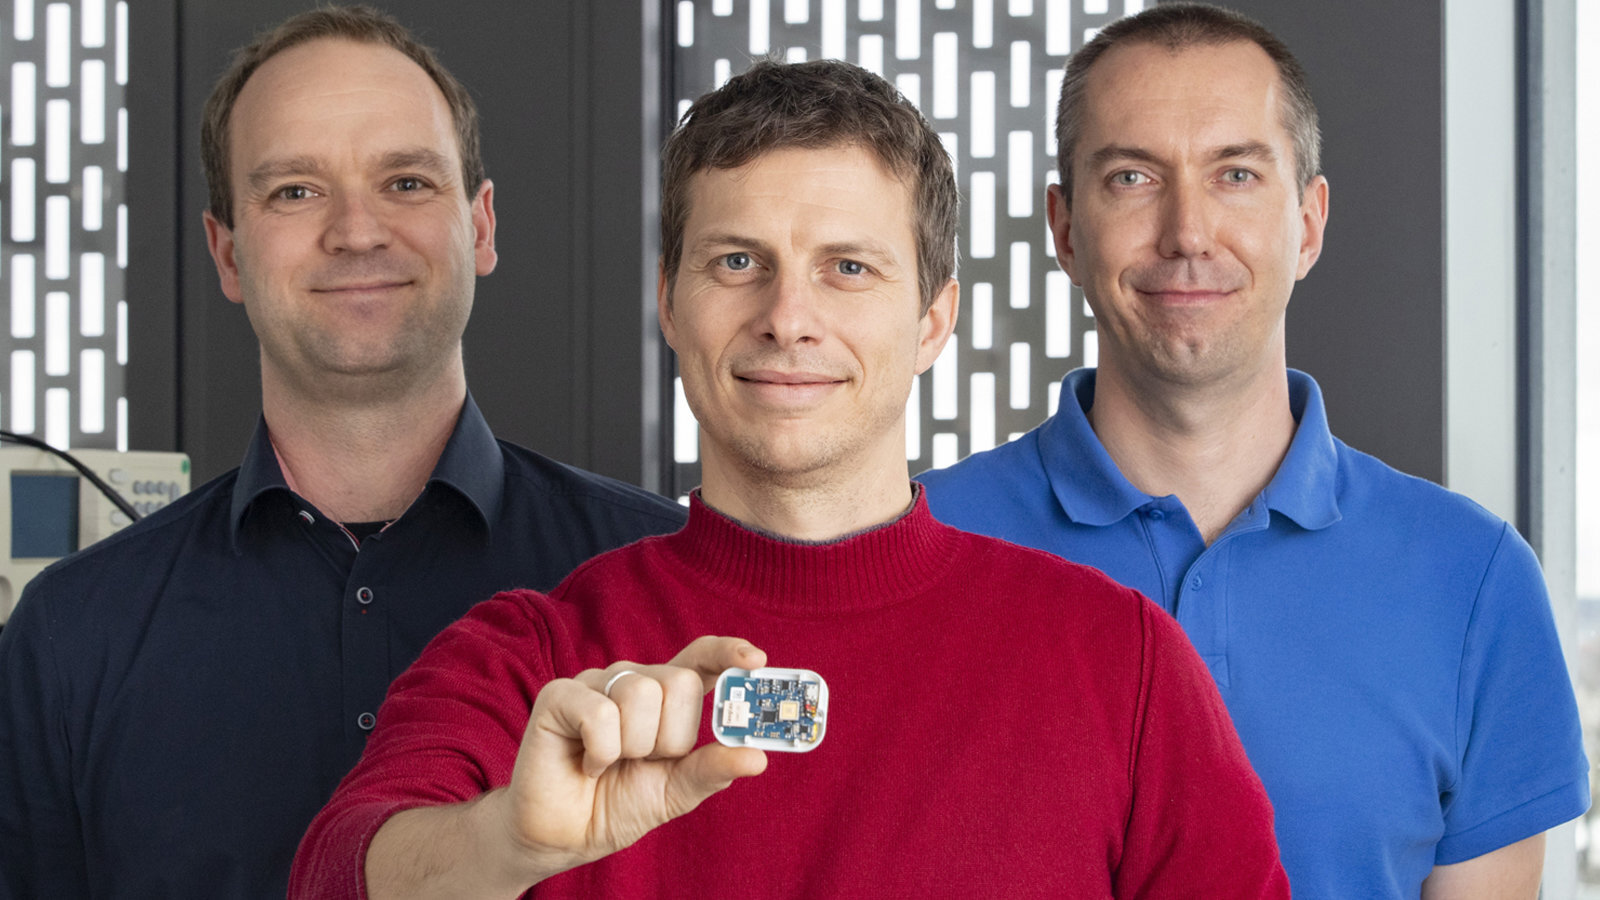 Drei Männer stehen nebeneinander und lächeln. Der Mann in der Mitte hält einen Chip in der Hand.